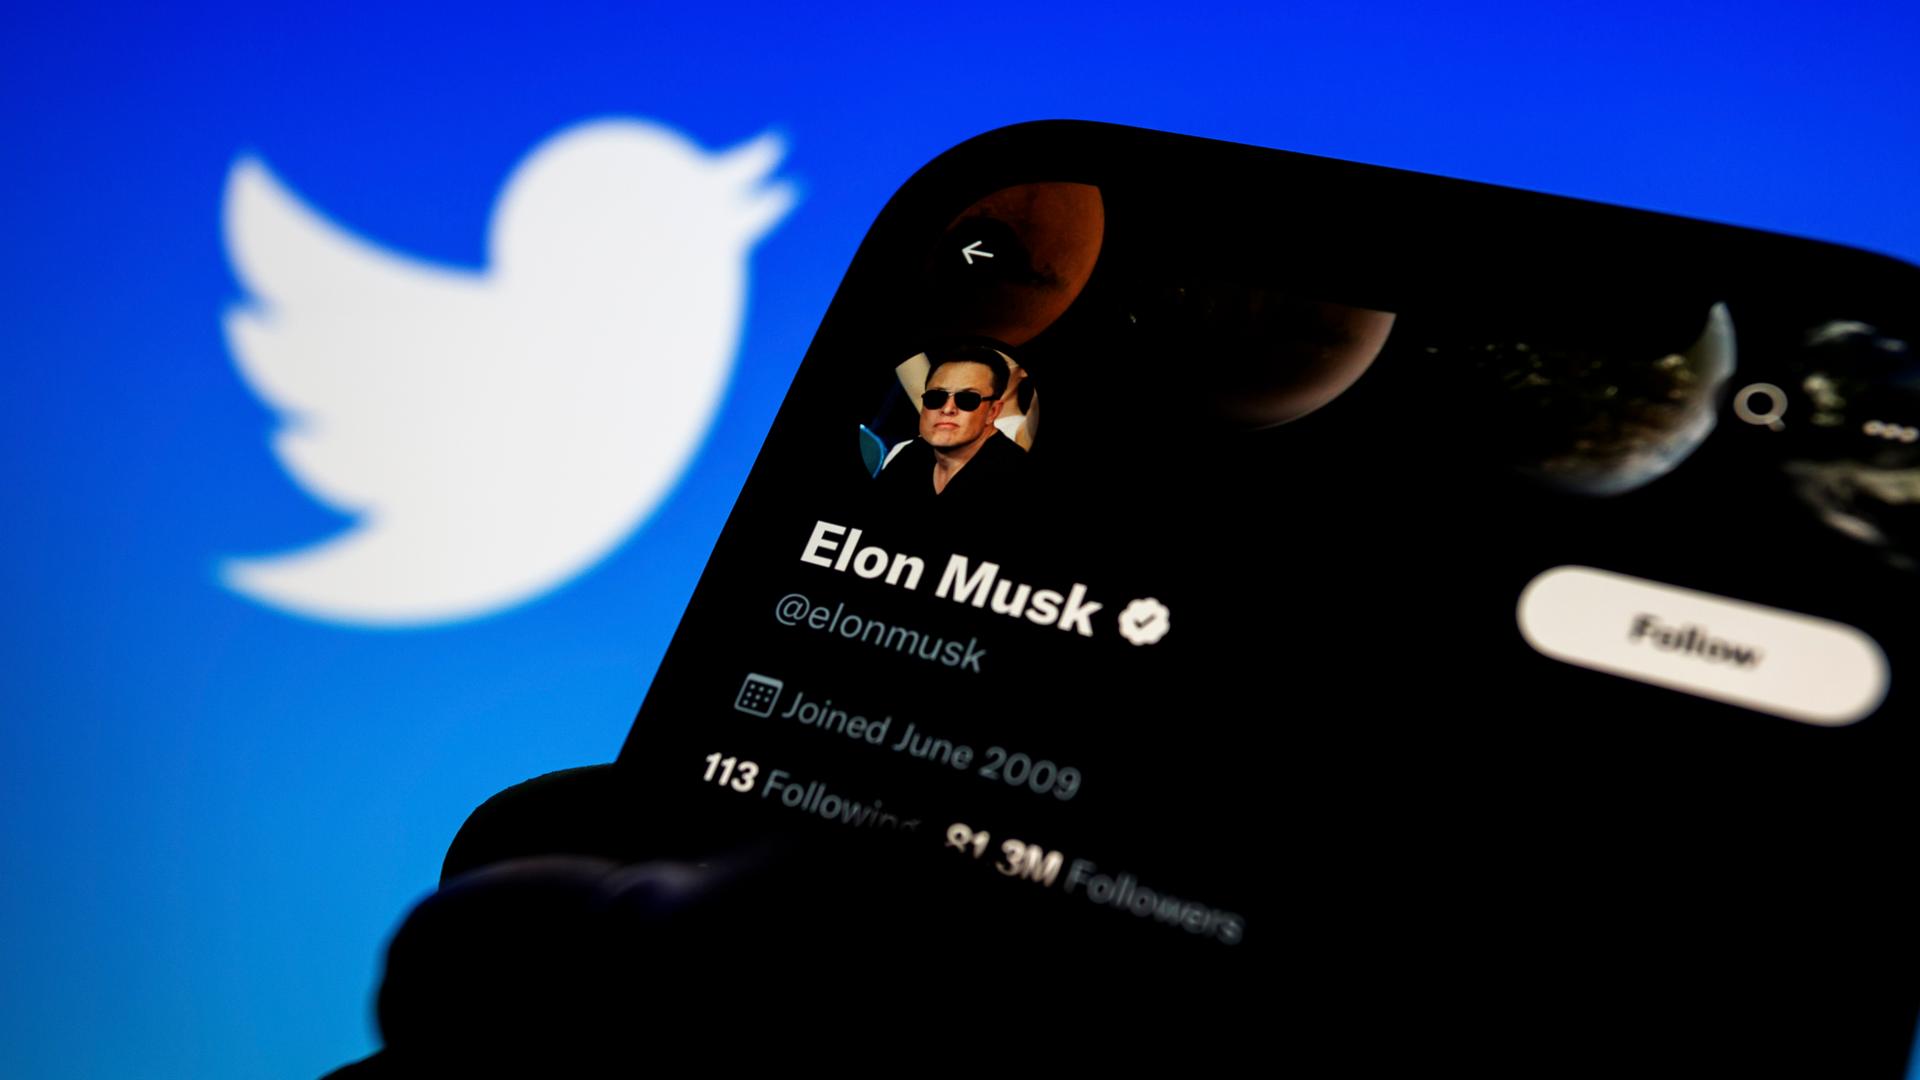 Das Twitter-Profil von Elon Musk auf einem Handy